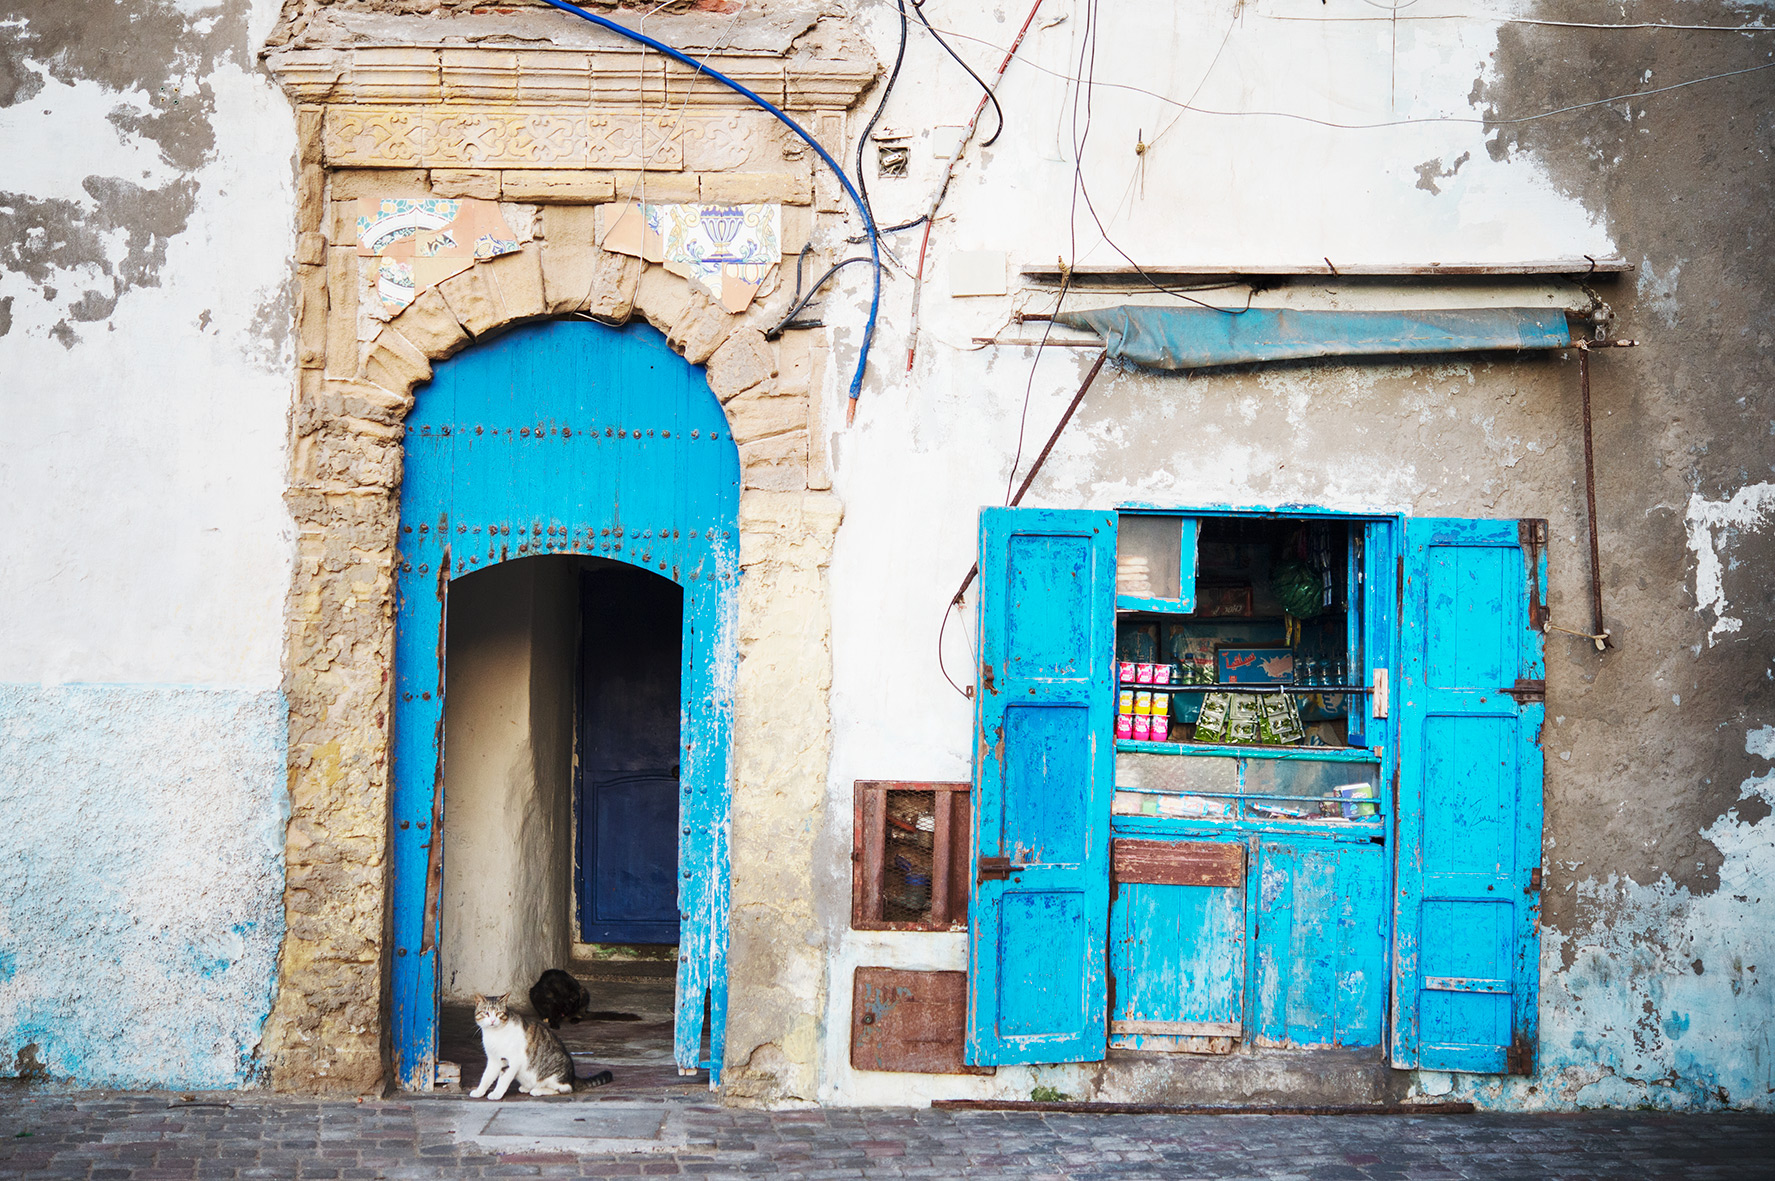 Altstadt von Essaouira, Marokk, Bild aus Afrika erhältlich im Onlineshop